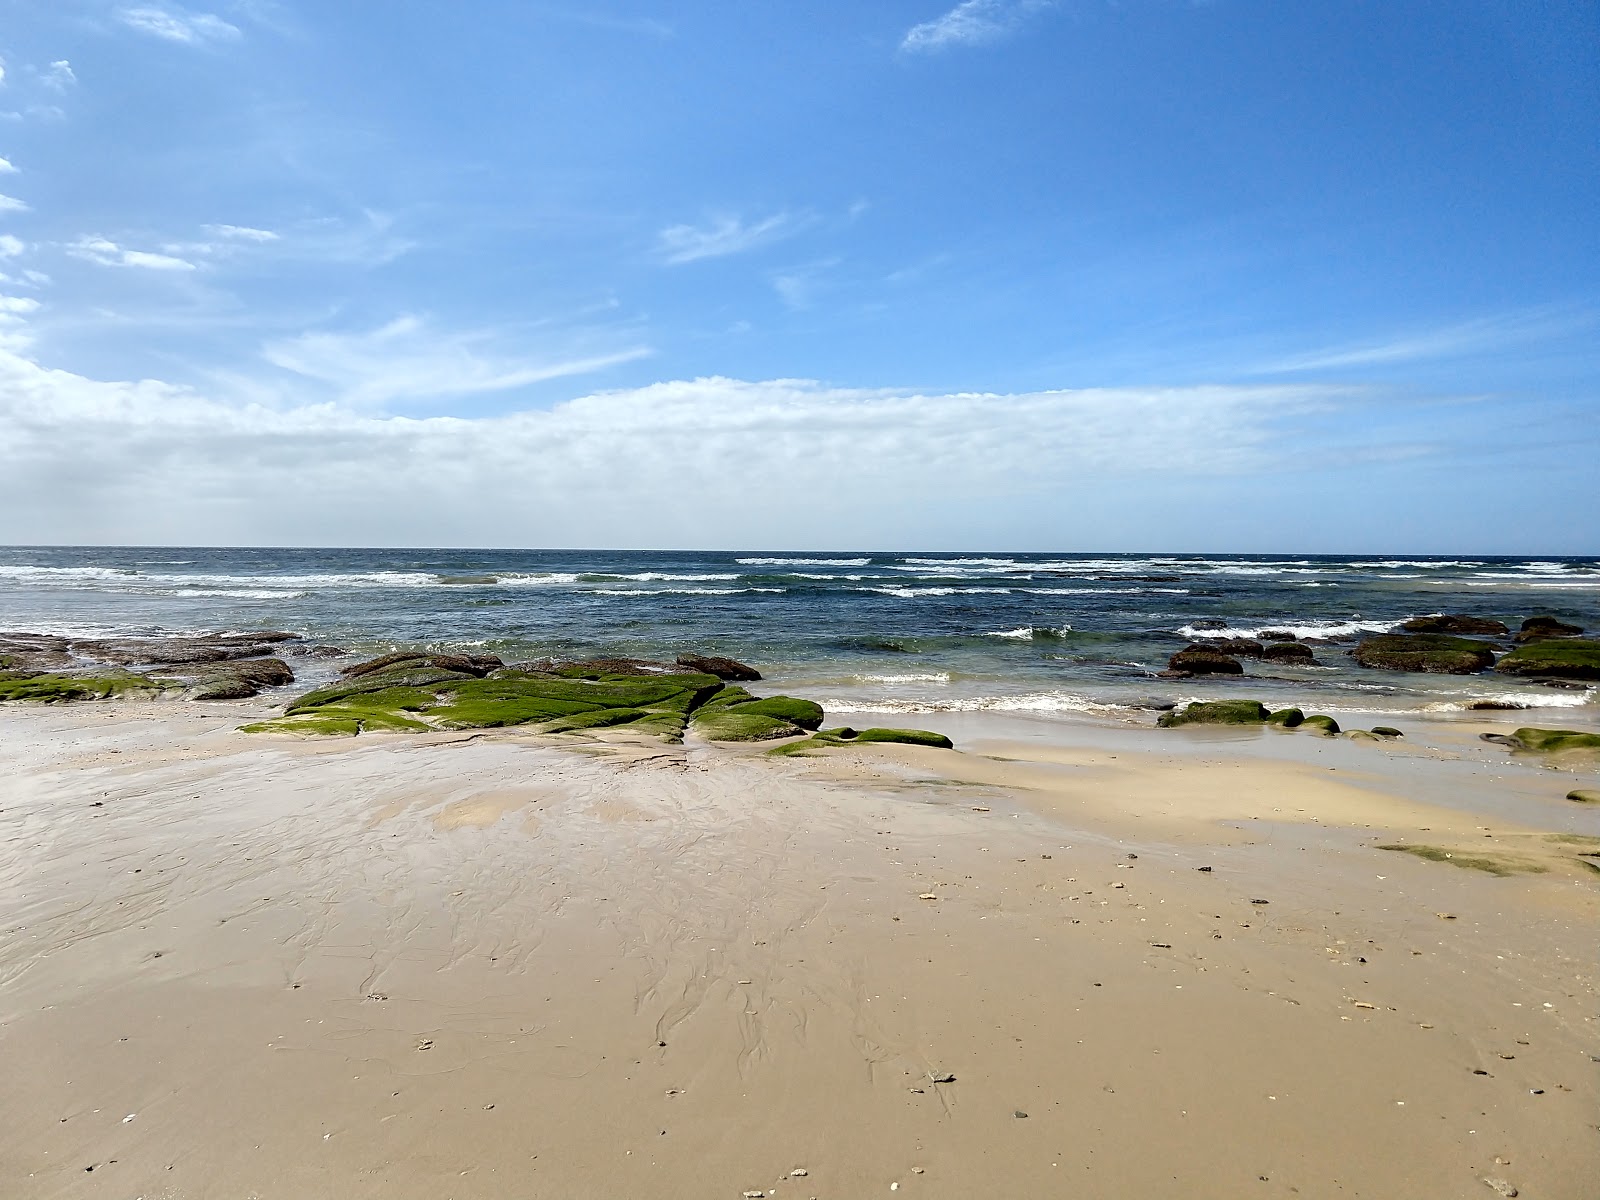 Fotografie cu Kefani beach cu o suprafață de nisip fin strălucitor